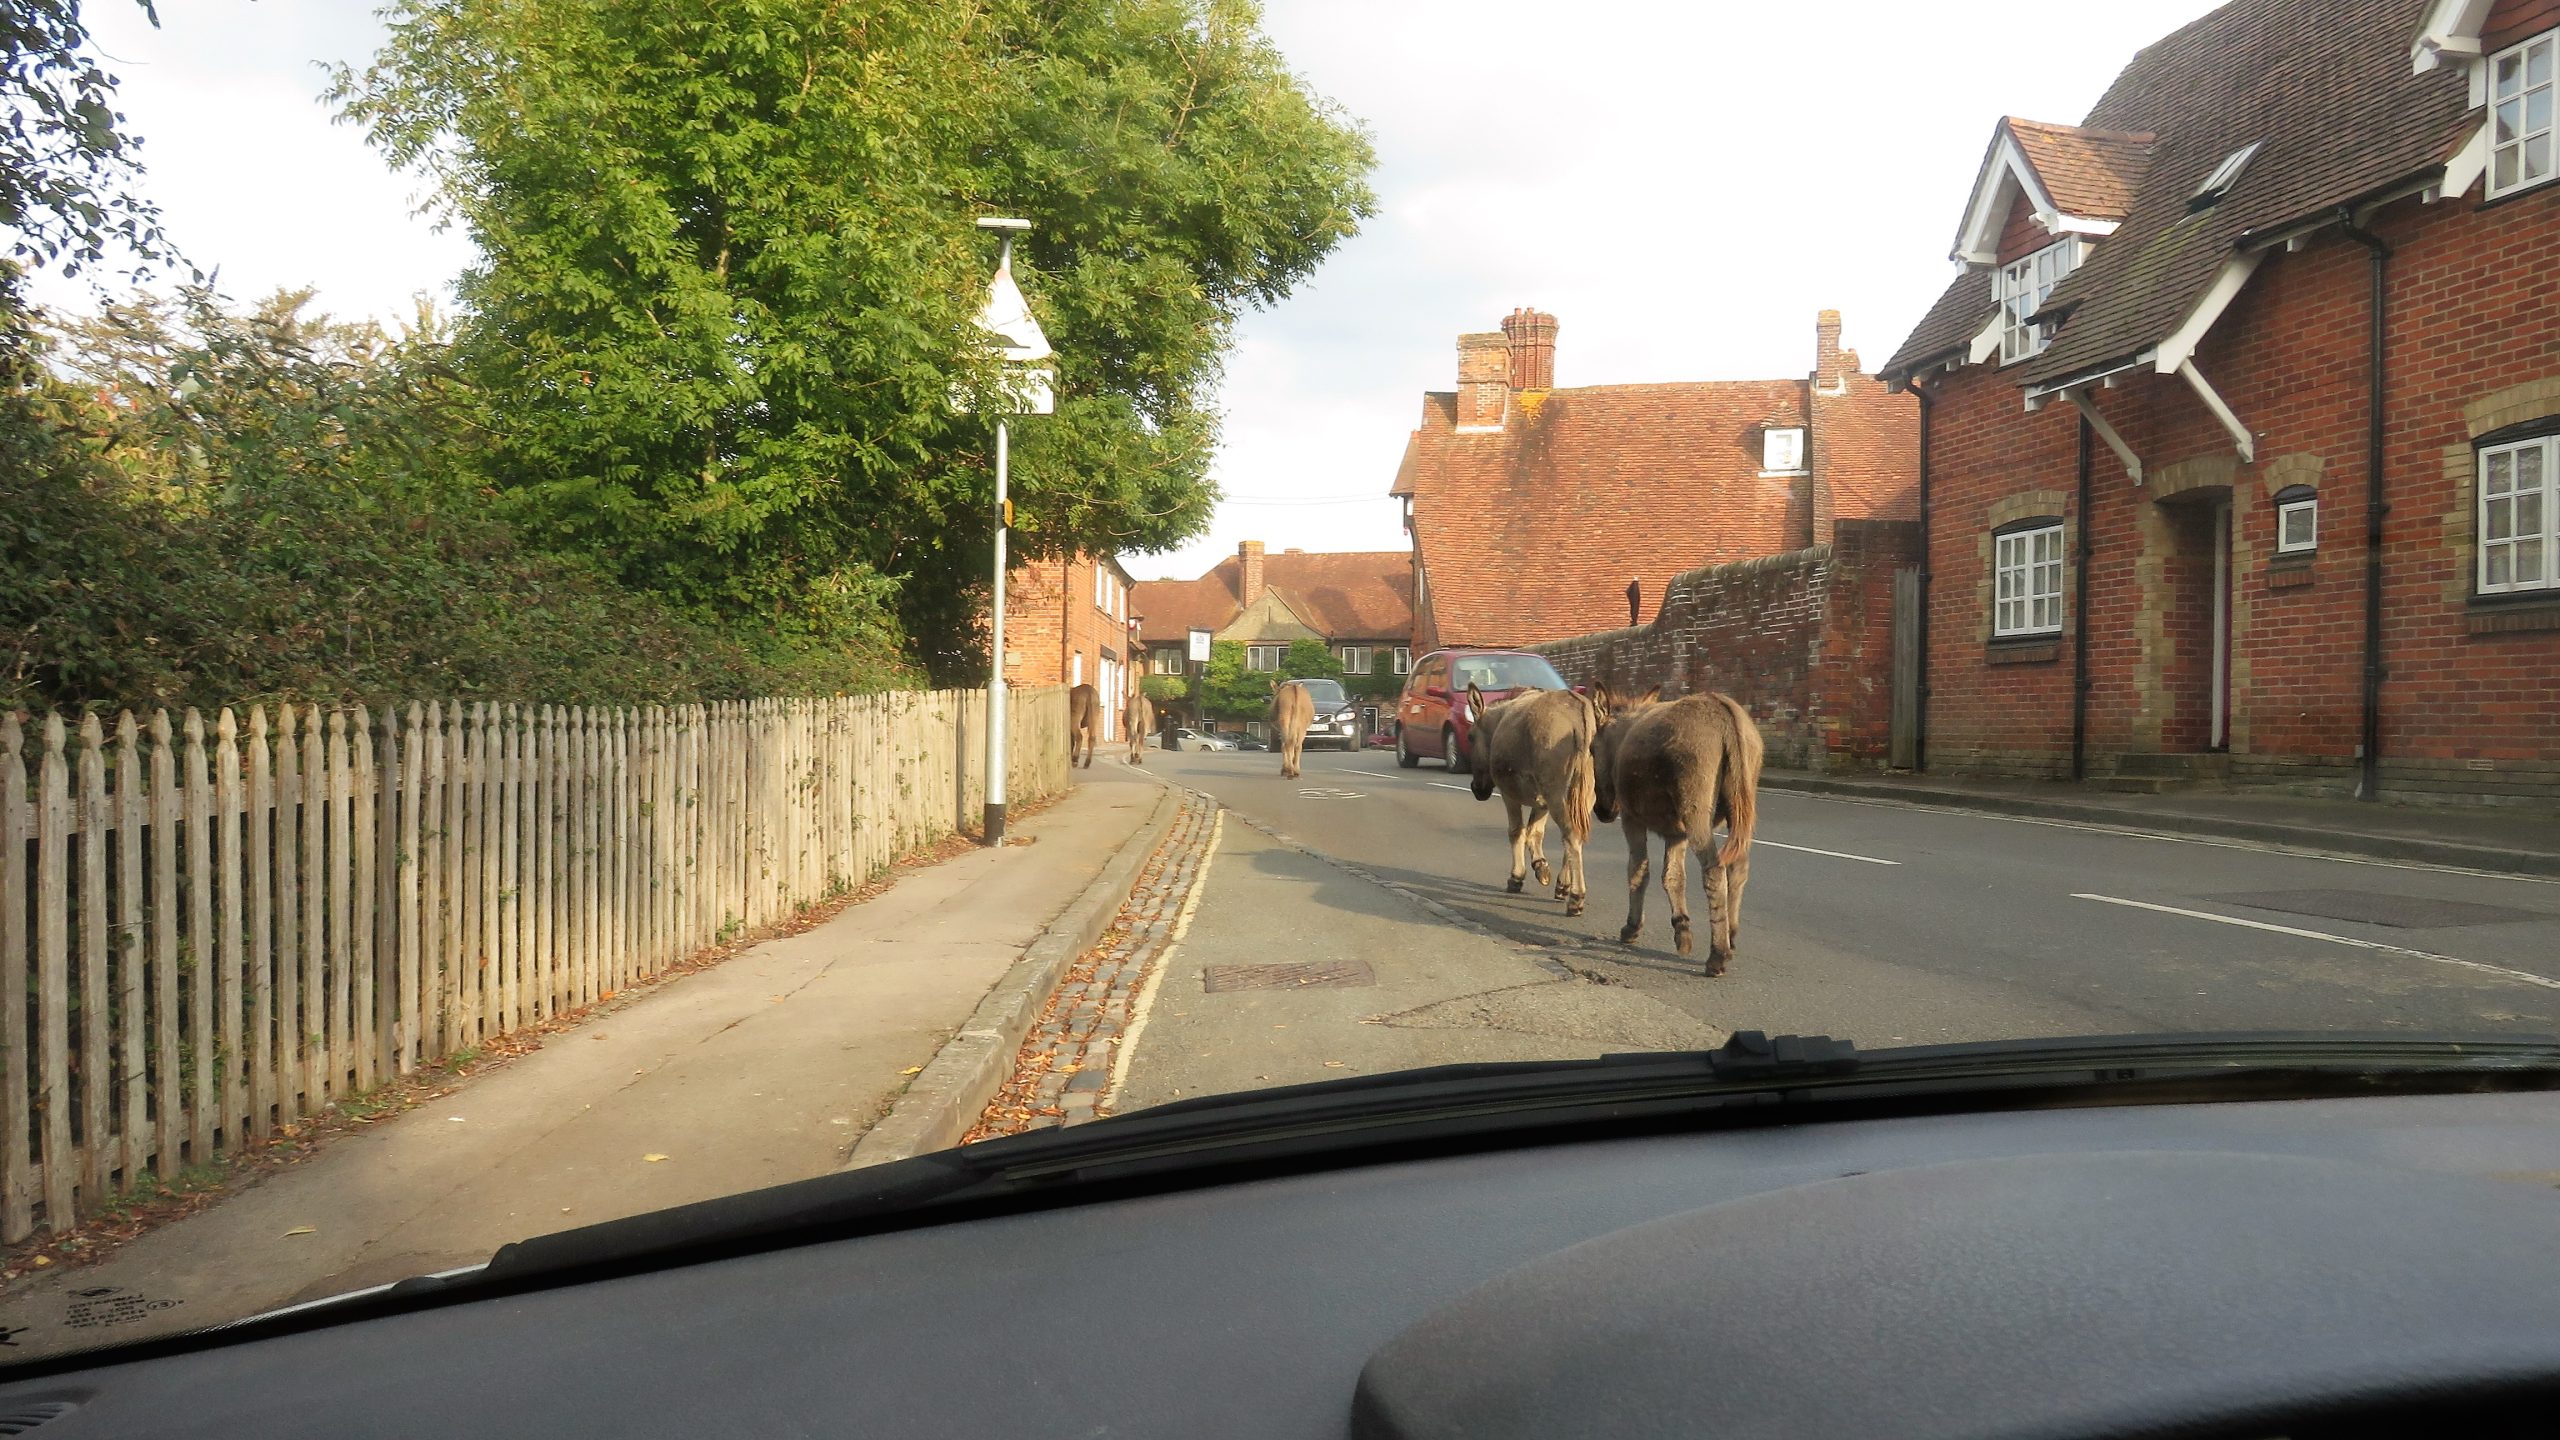 Donkeys on road